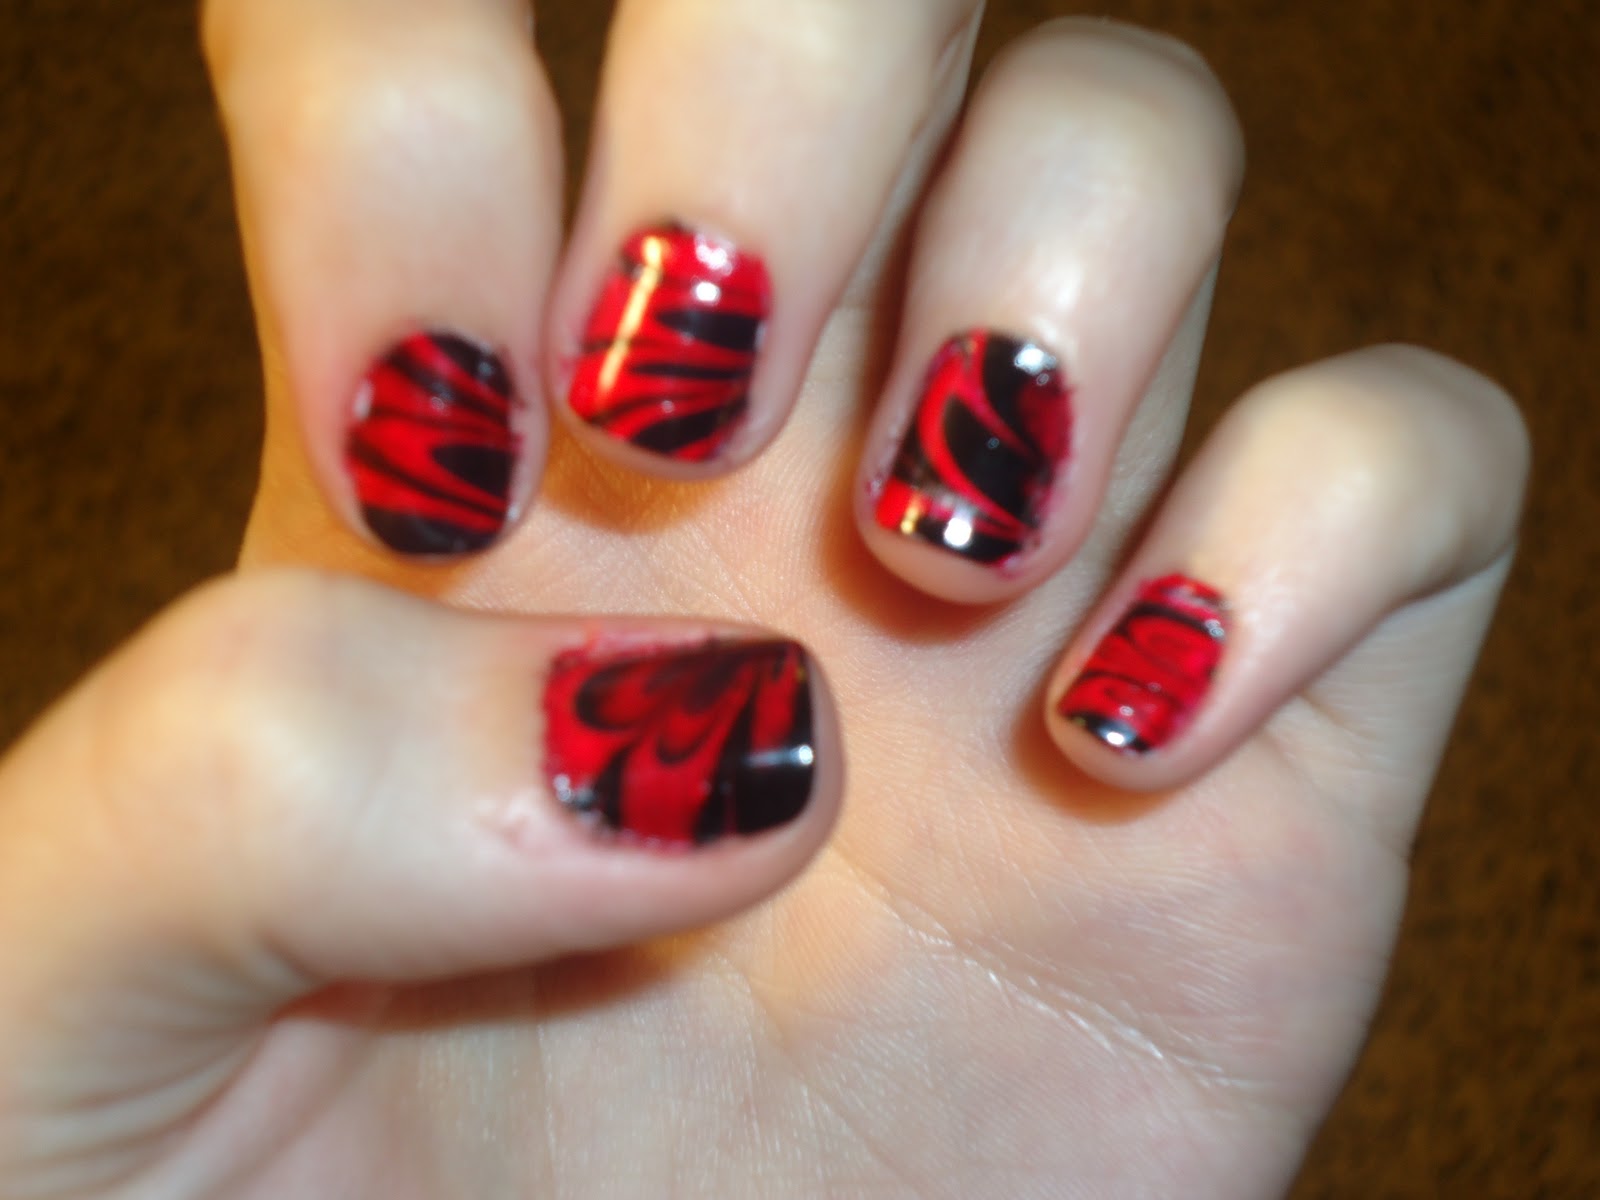  Sweet nails